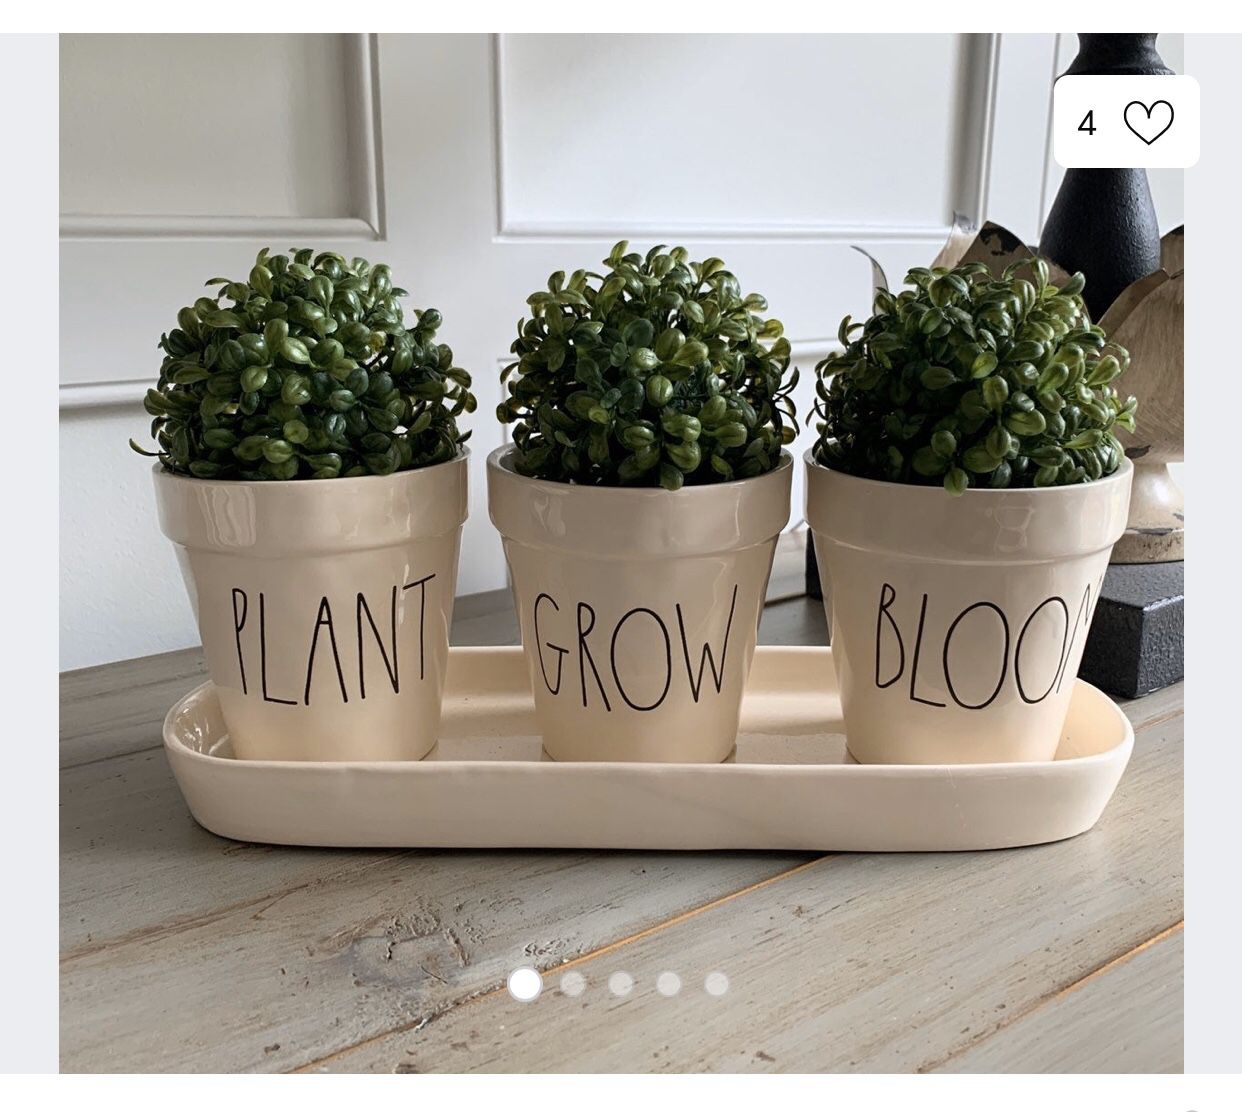 Rae Dunn “PLANT GROW BLOOM” pots